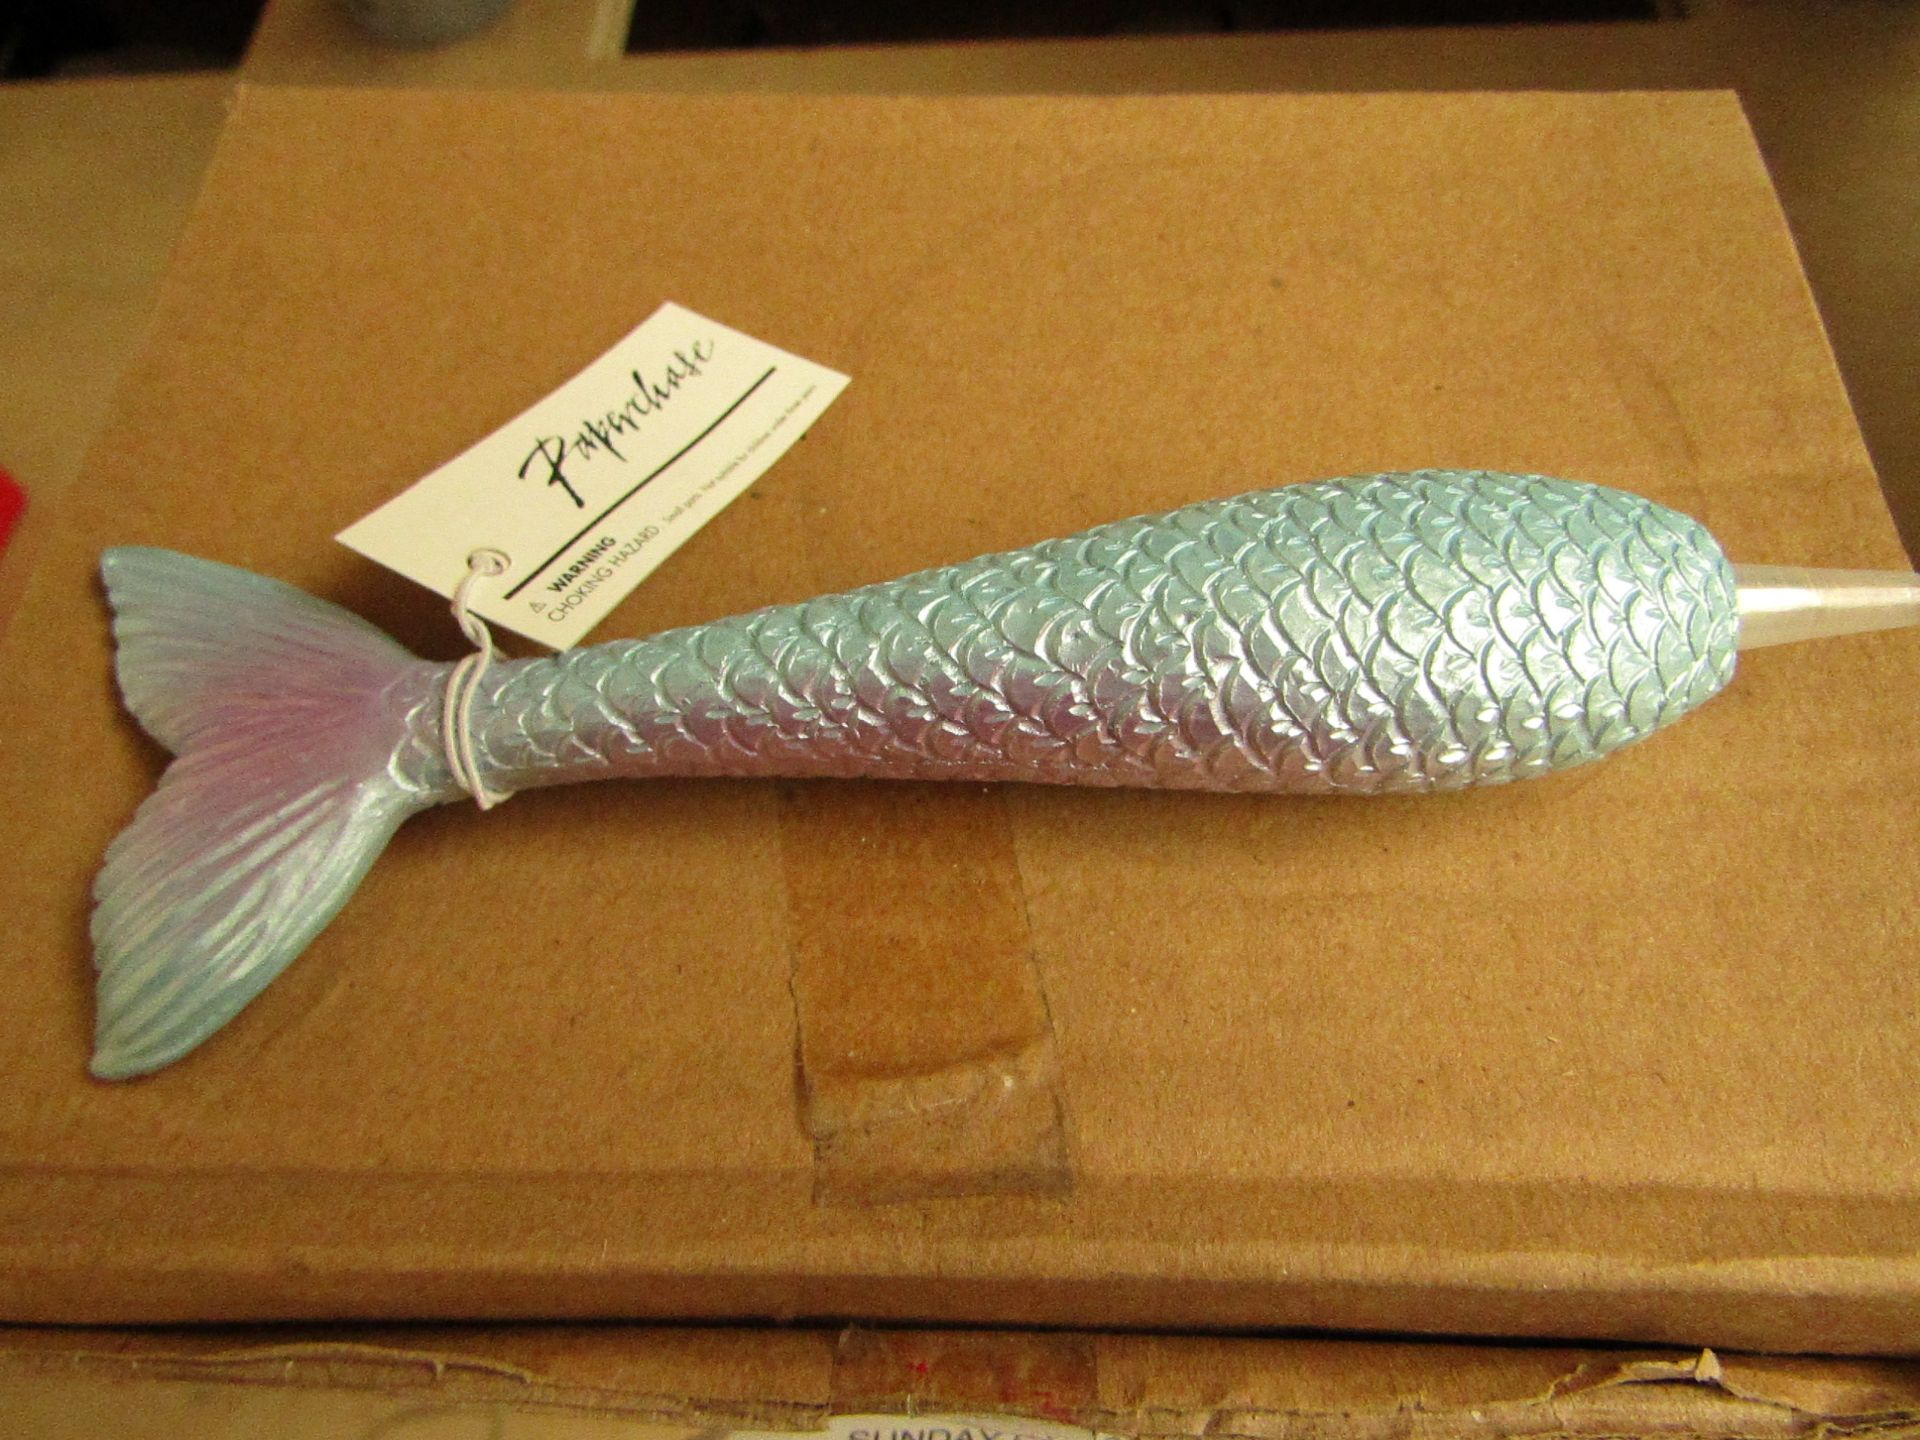 Box of 12 Mermaid Tail Pens. Unused & Packaged.